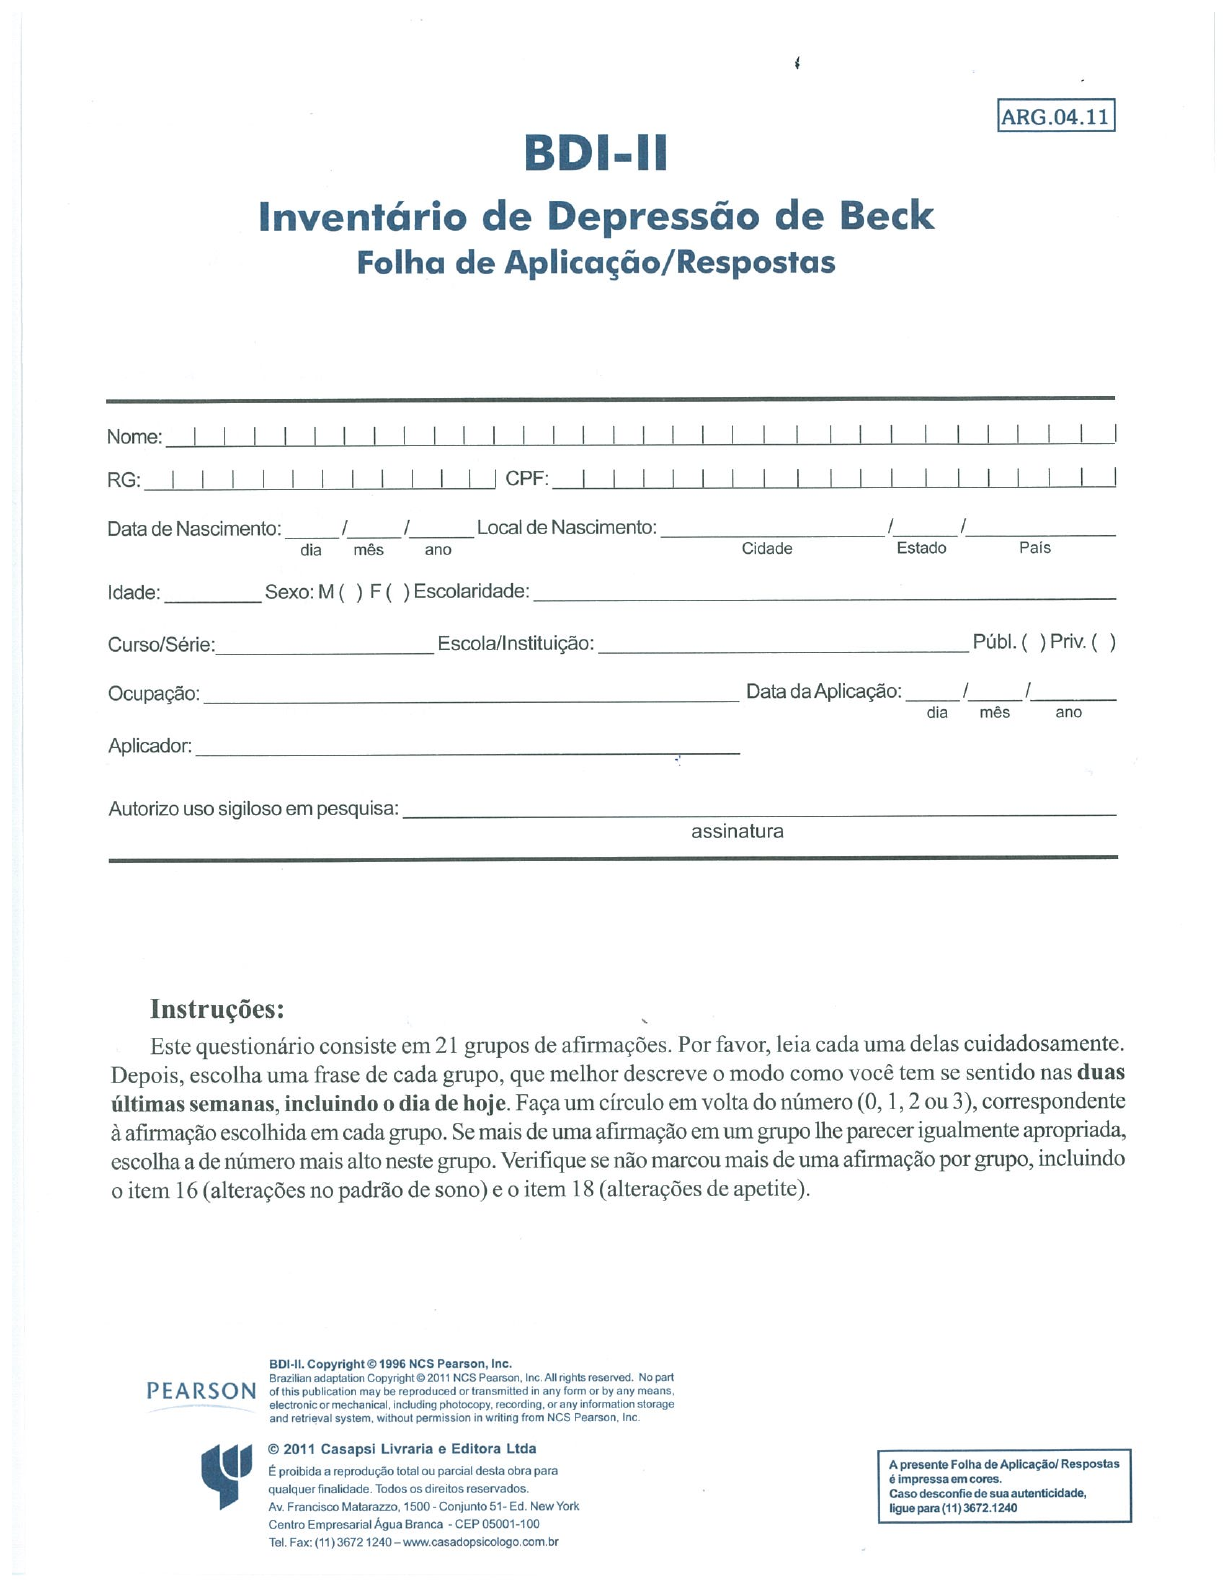 Teste de Depressão Online - Inventário de Beck (BDI-II) —